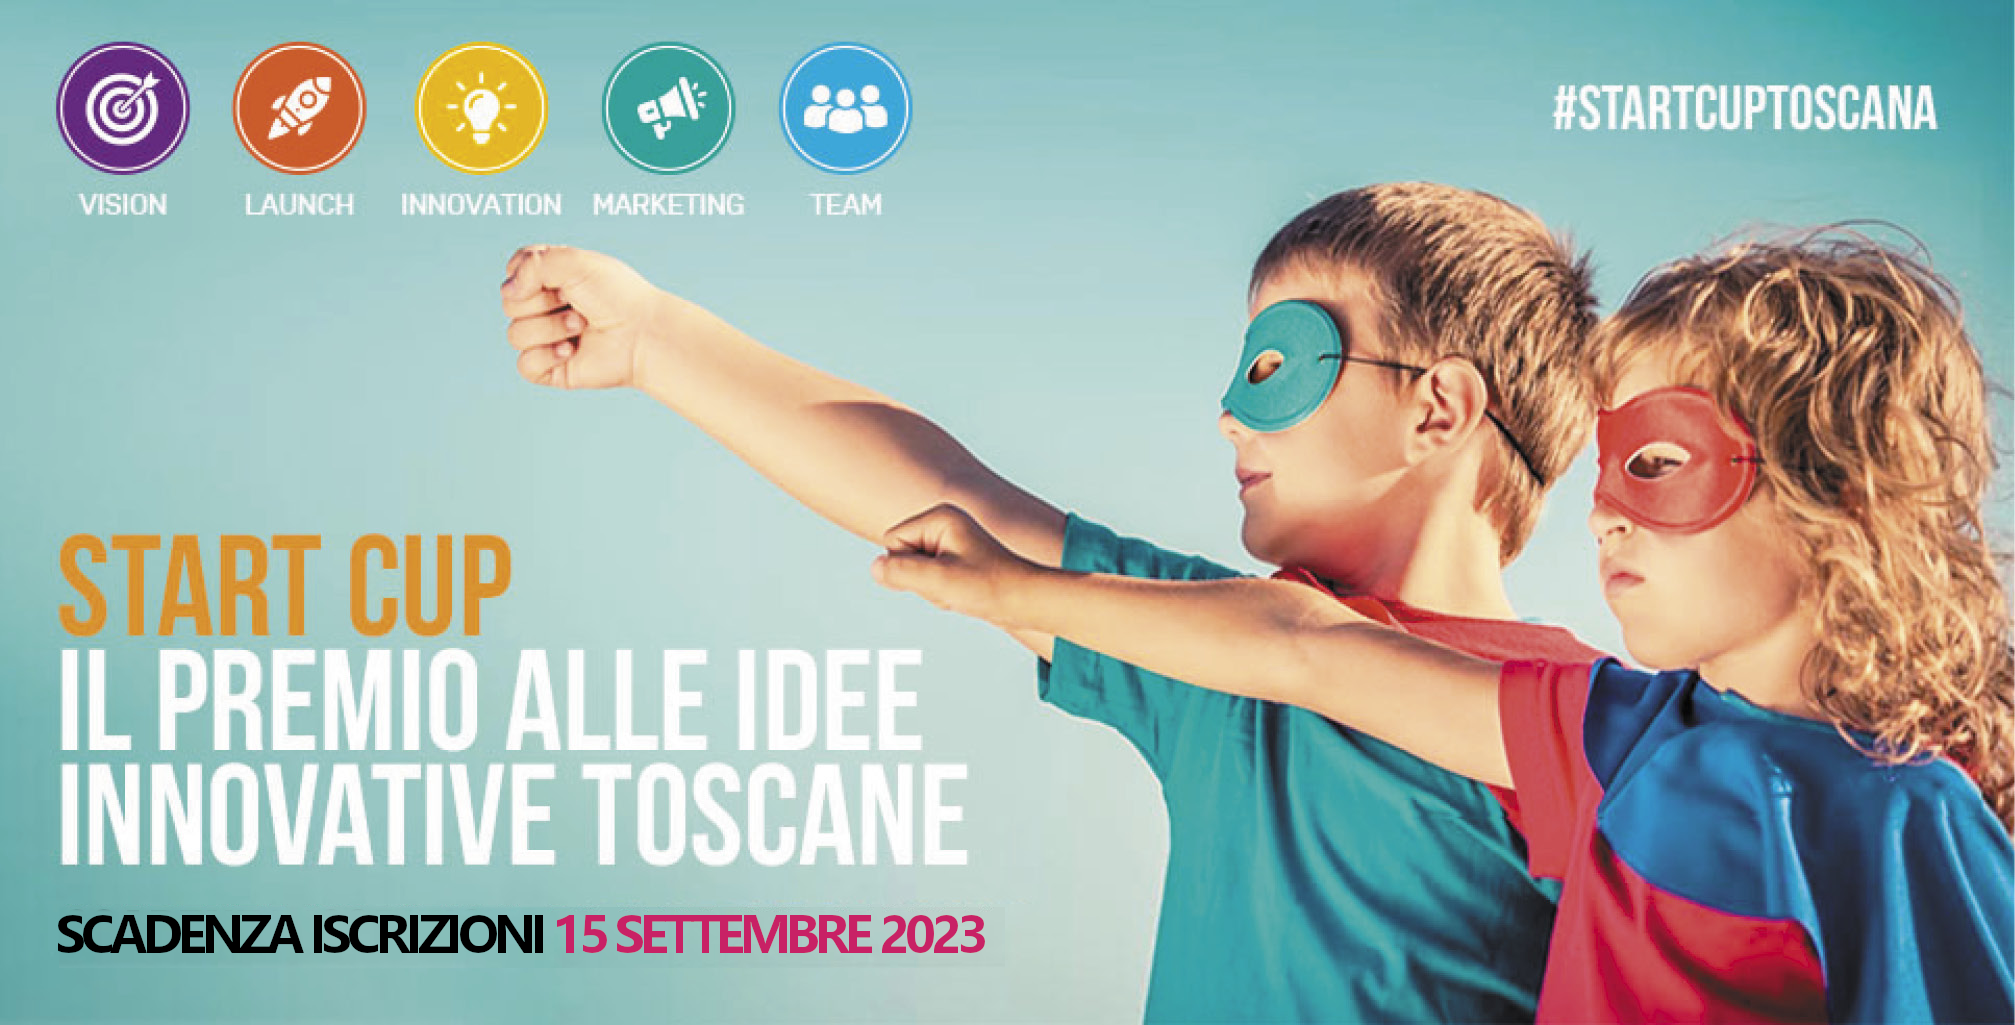 Start Cup Toscana, ultimi giorni per partecipare